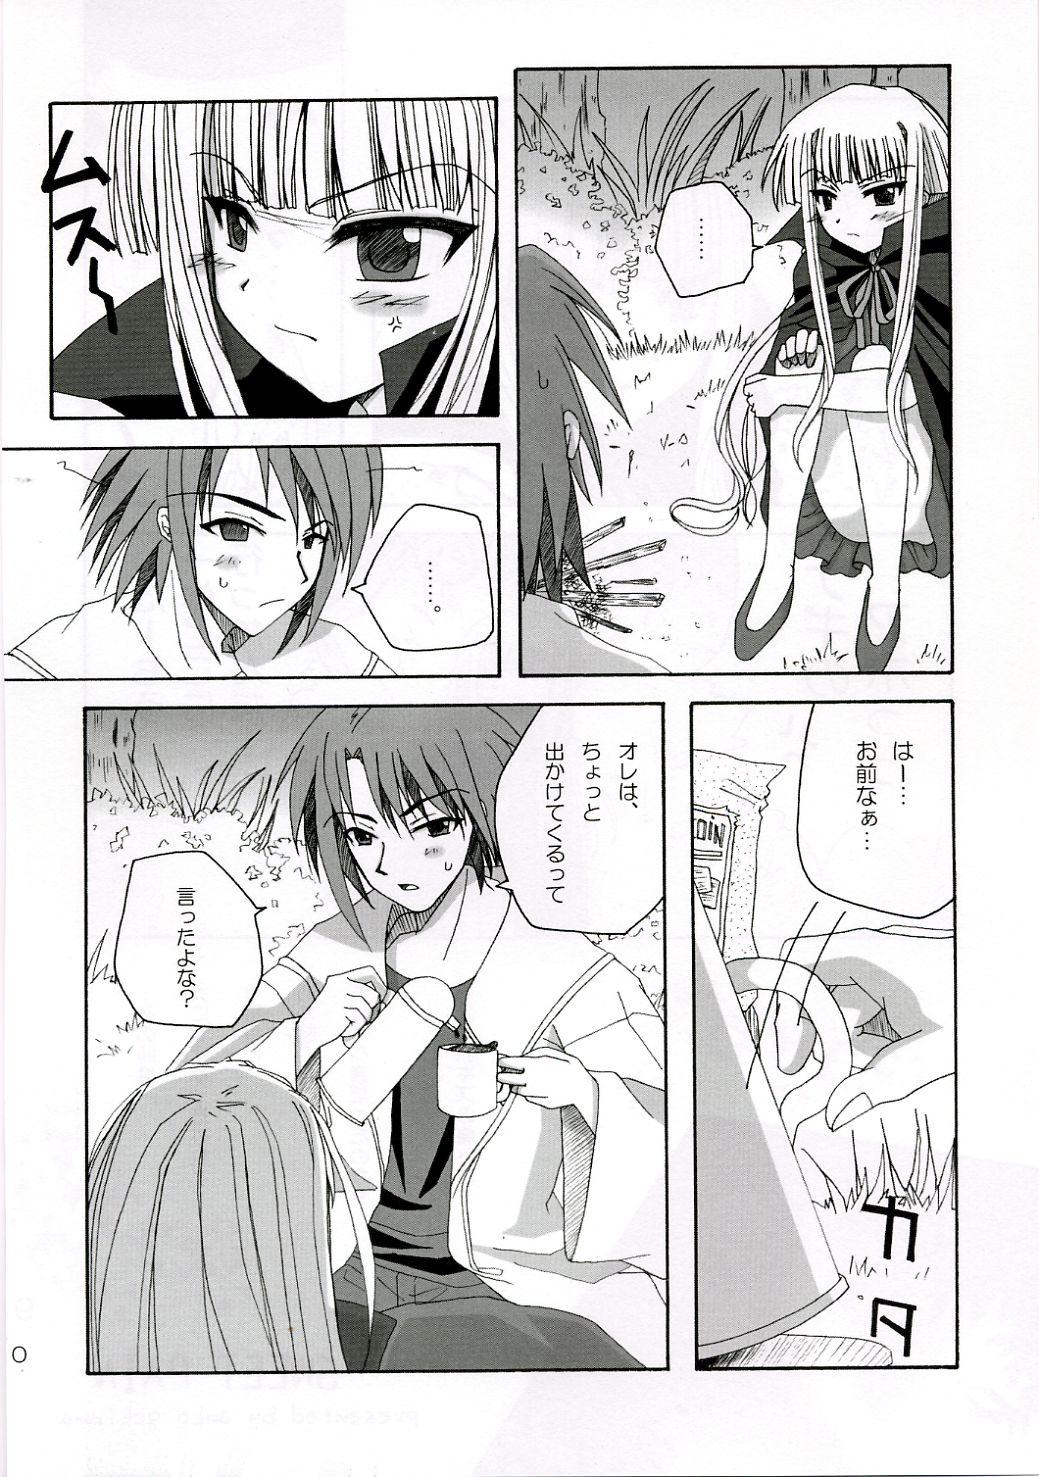 Stepfather SWEET PAIN - Mahou sensei negima Sexy Whores - Page 9